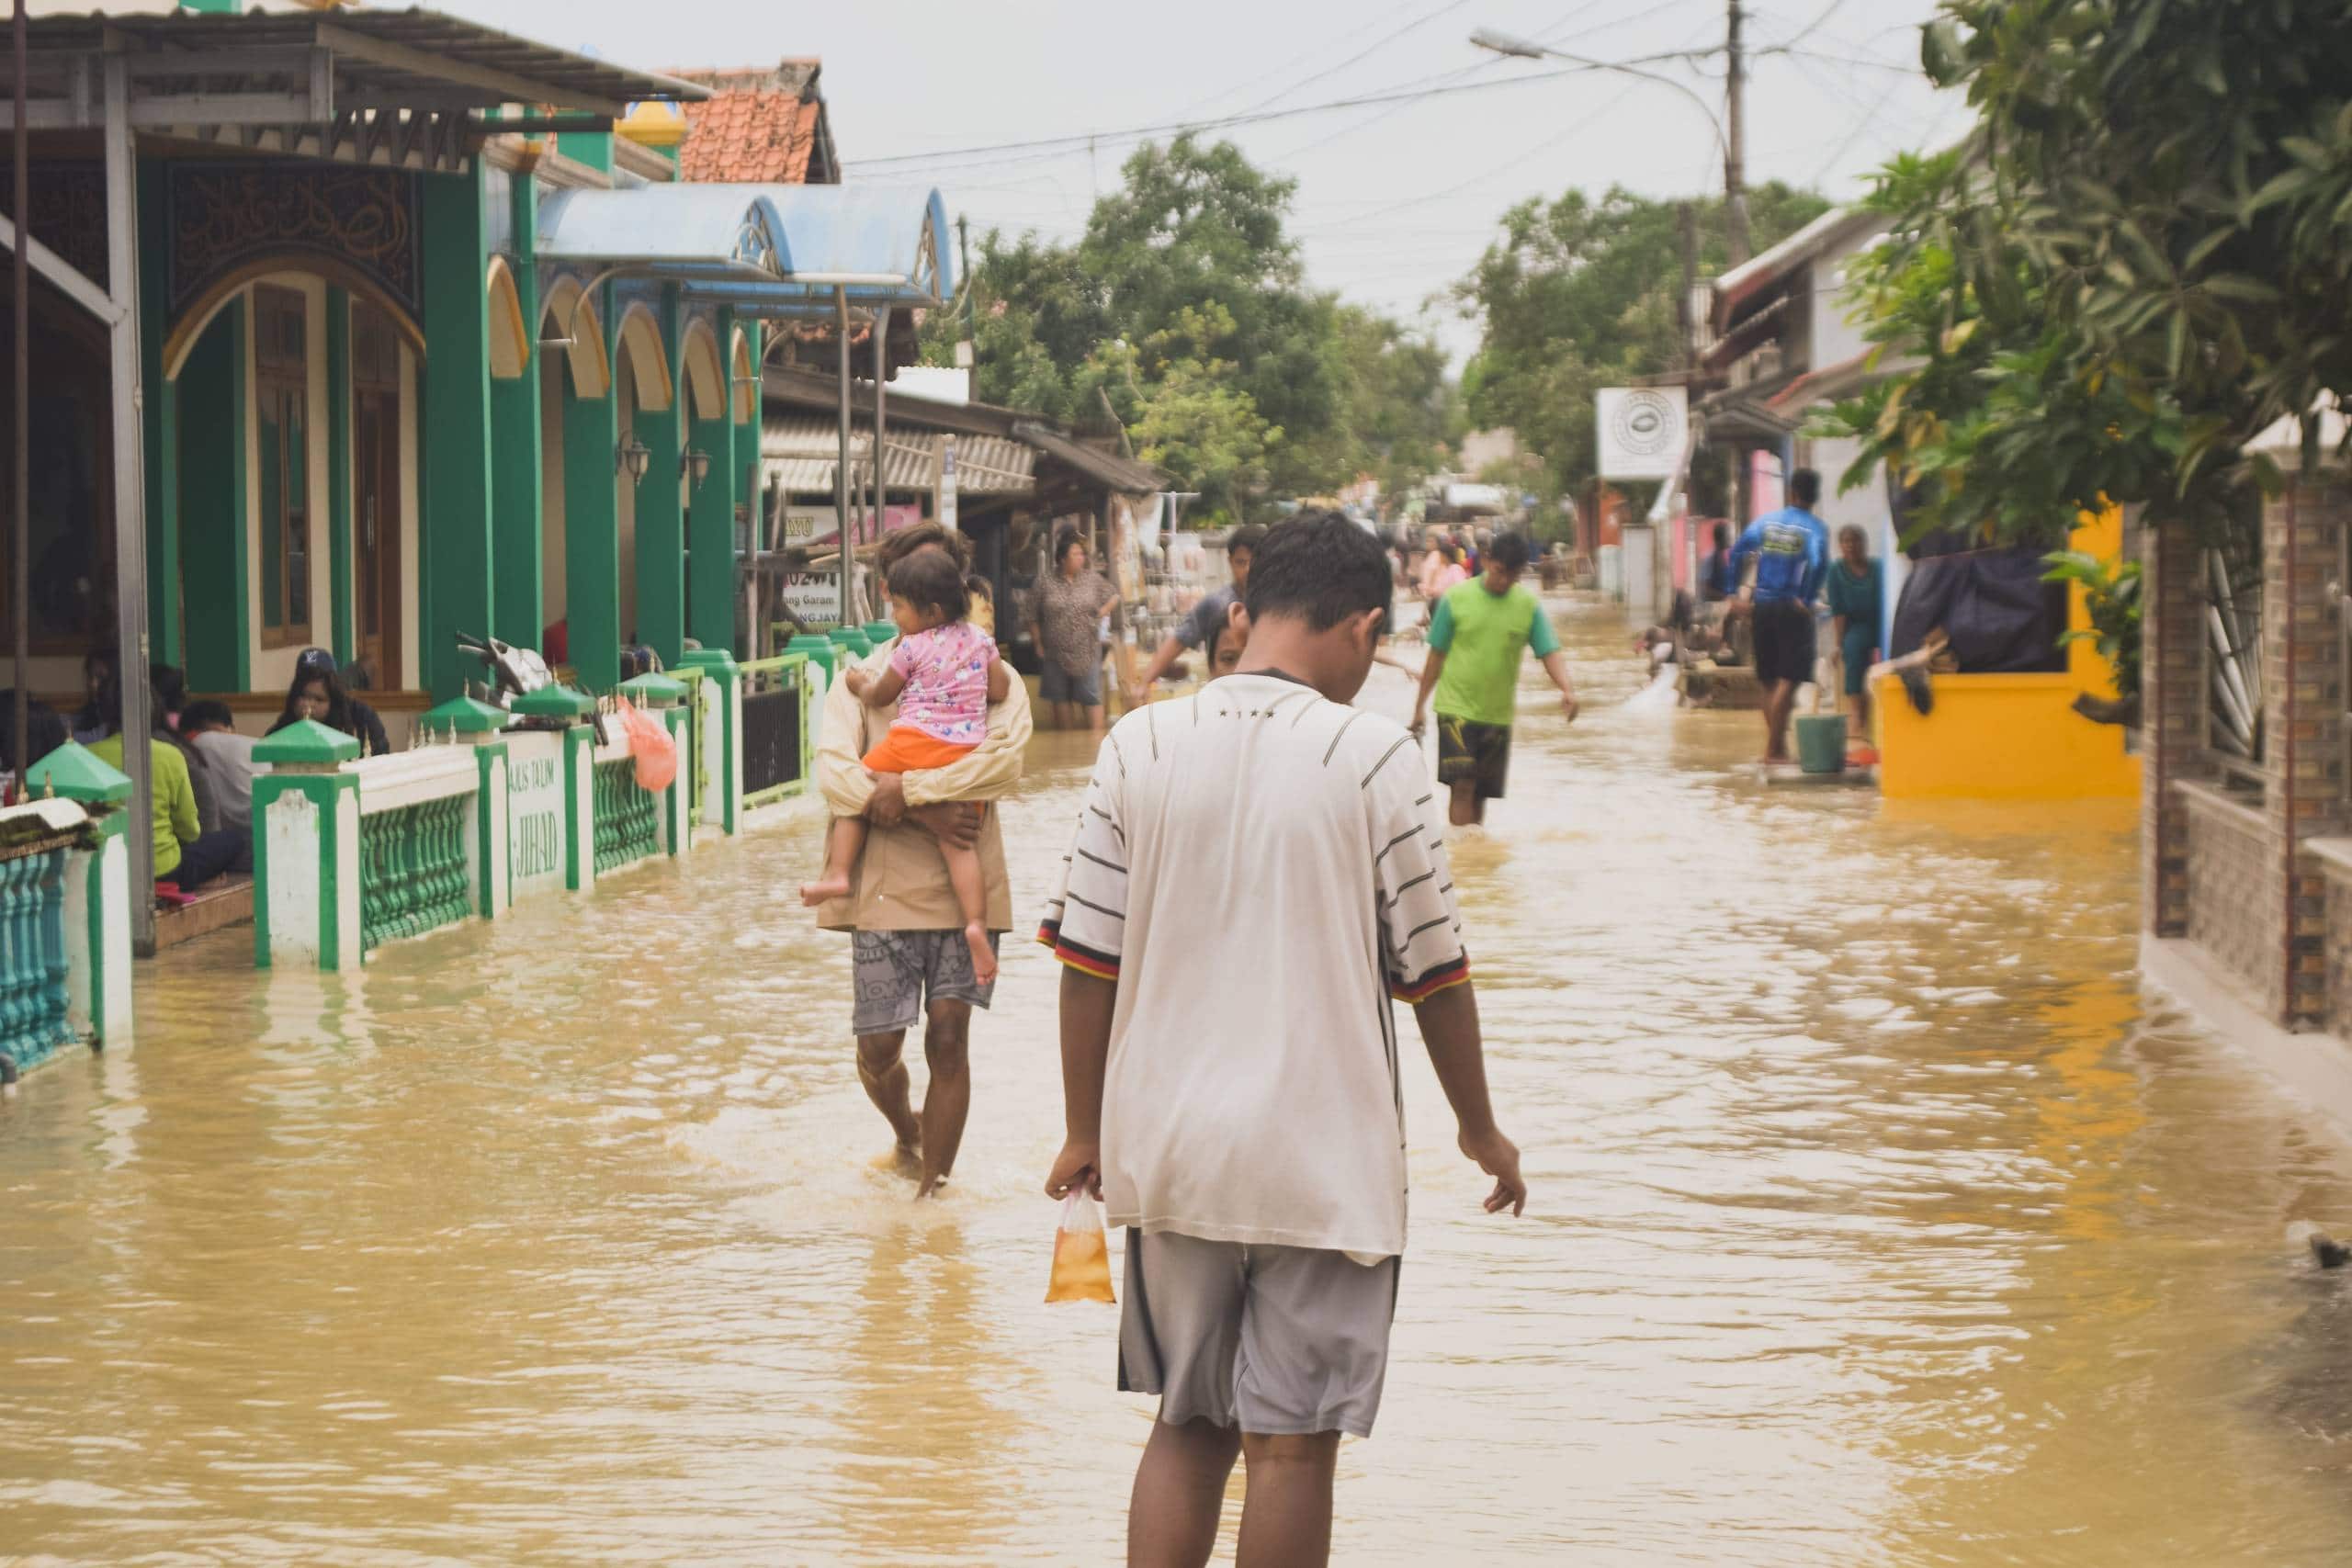 Mayores y más frecuentes inundaciones, uno de los efectos del cambio climático. Créditos: Misbahul Aulia / Unsplash